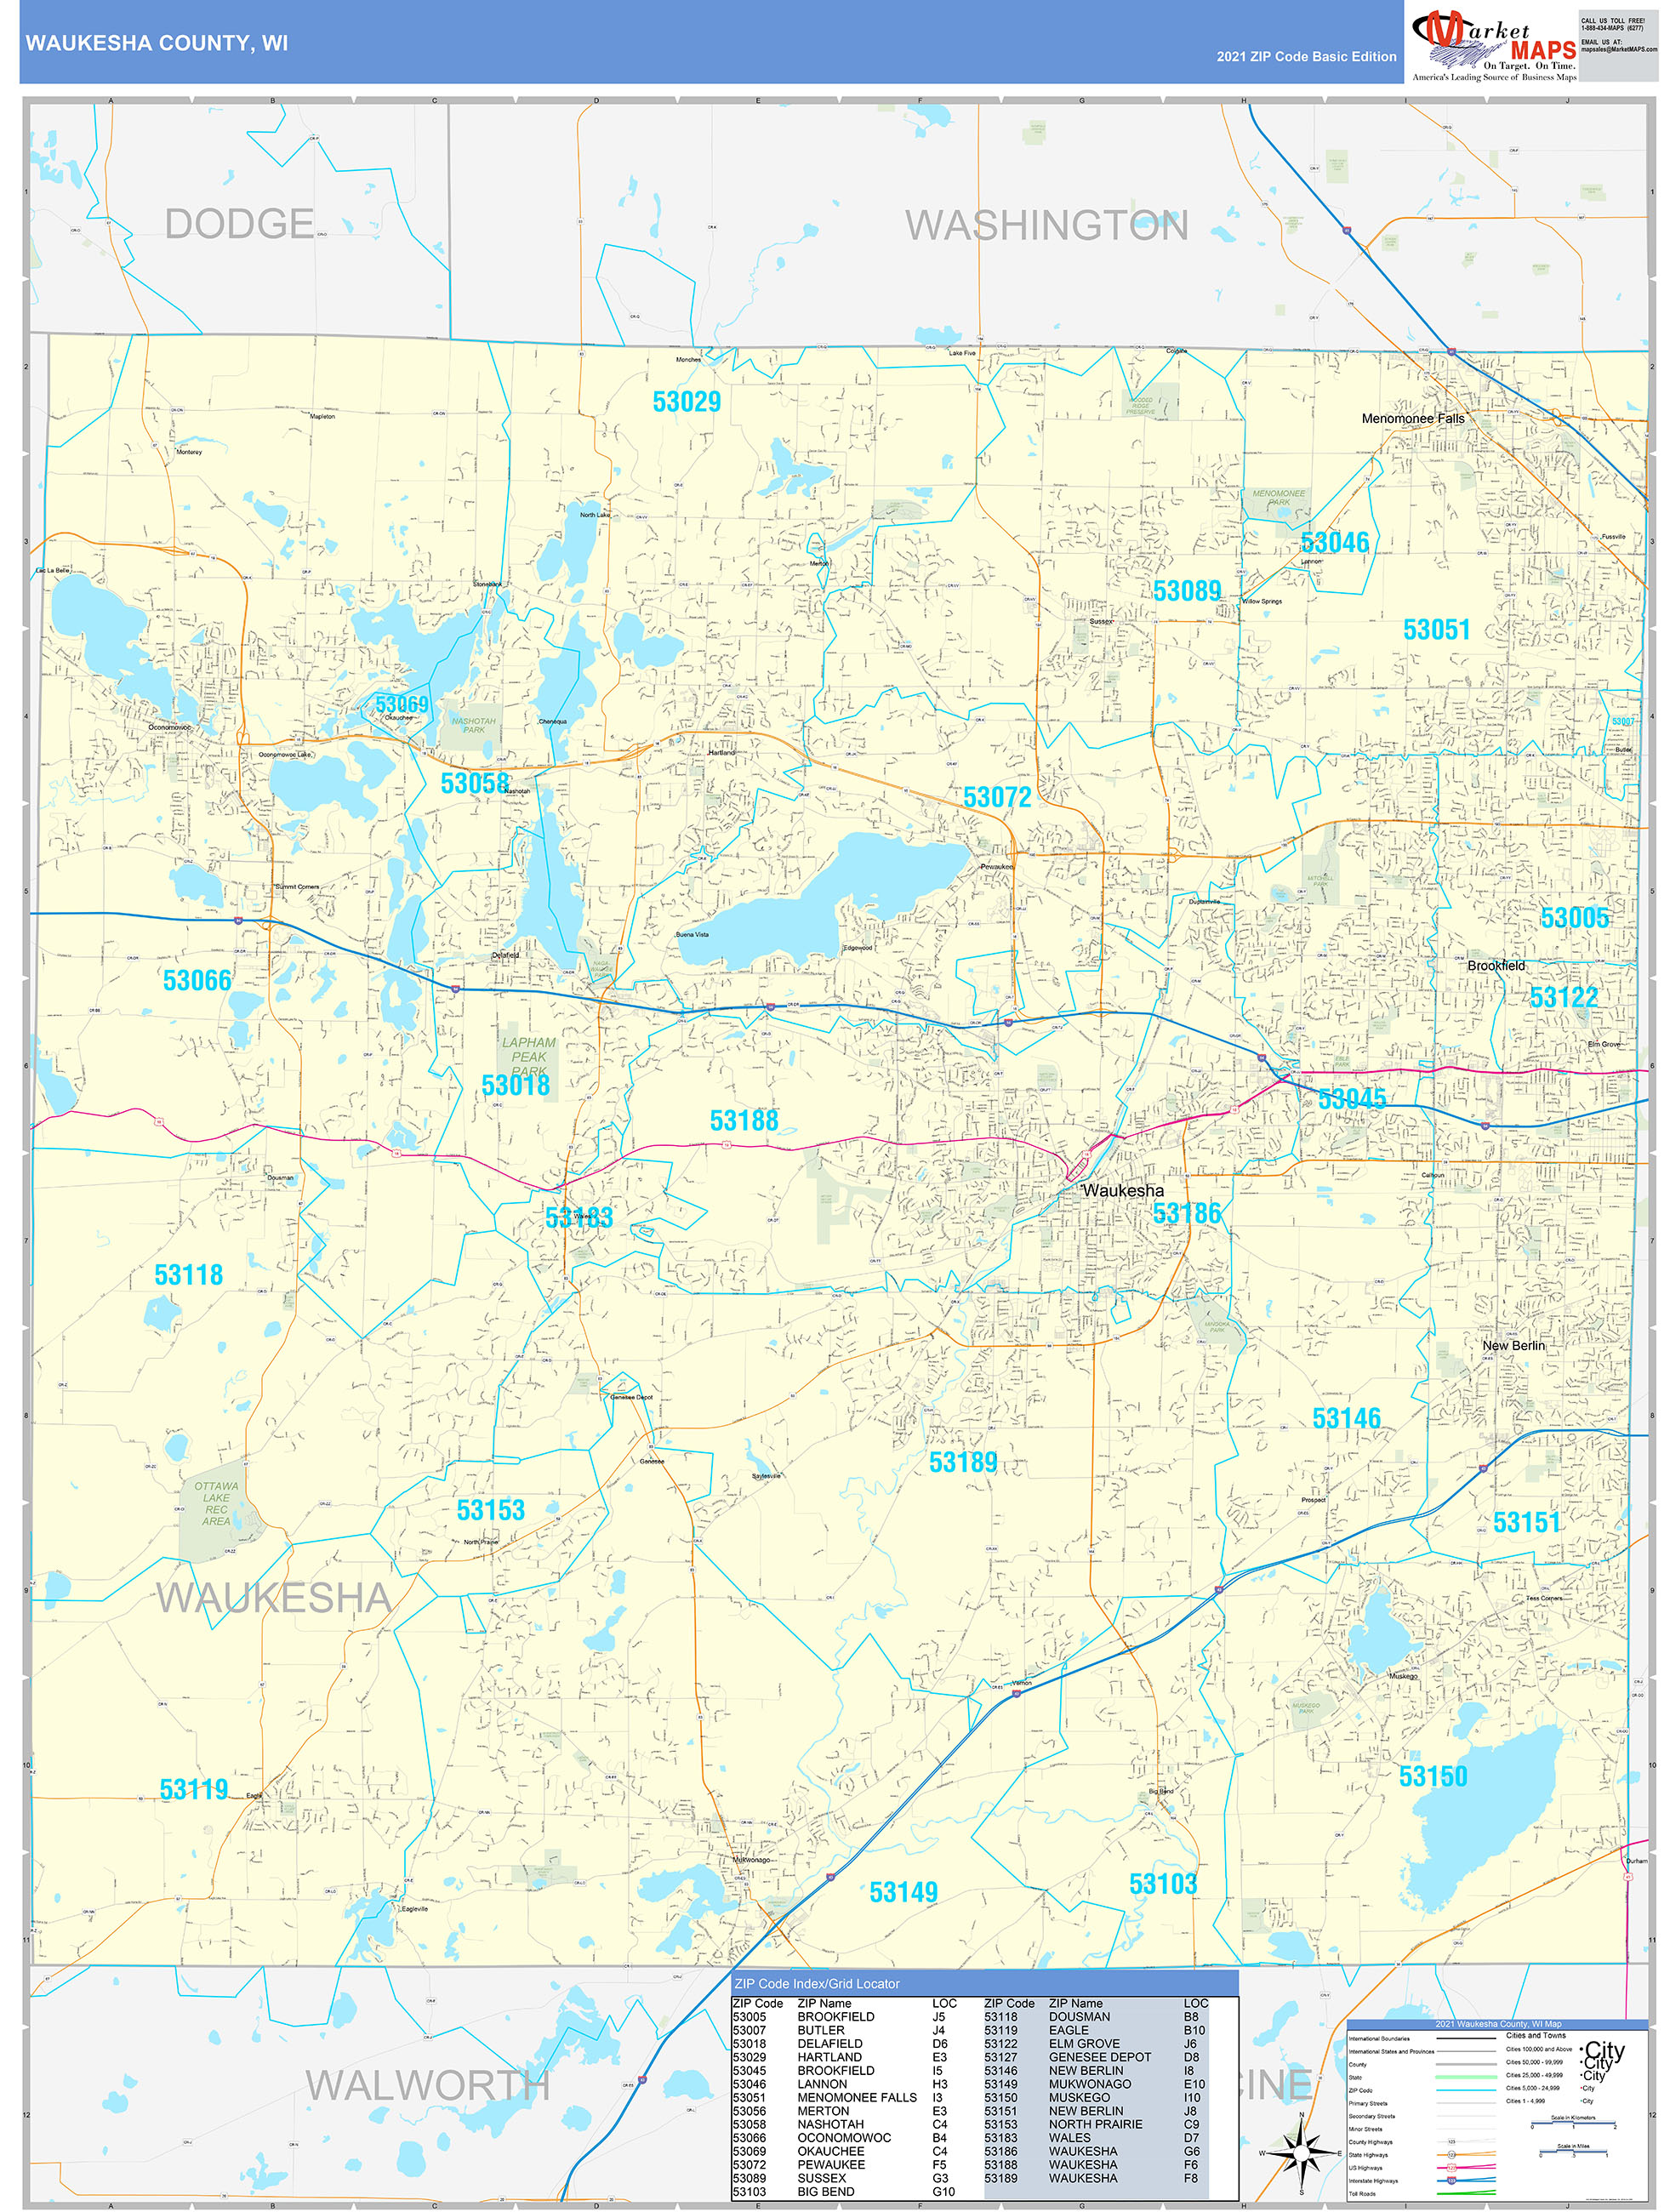 Waukesha County, WI Zip Code Wall Map Basic Style by MarketMAPS MapSales